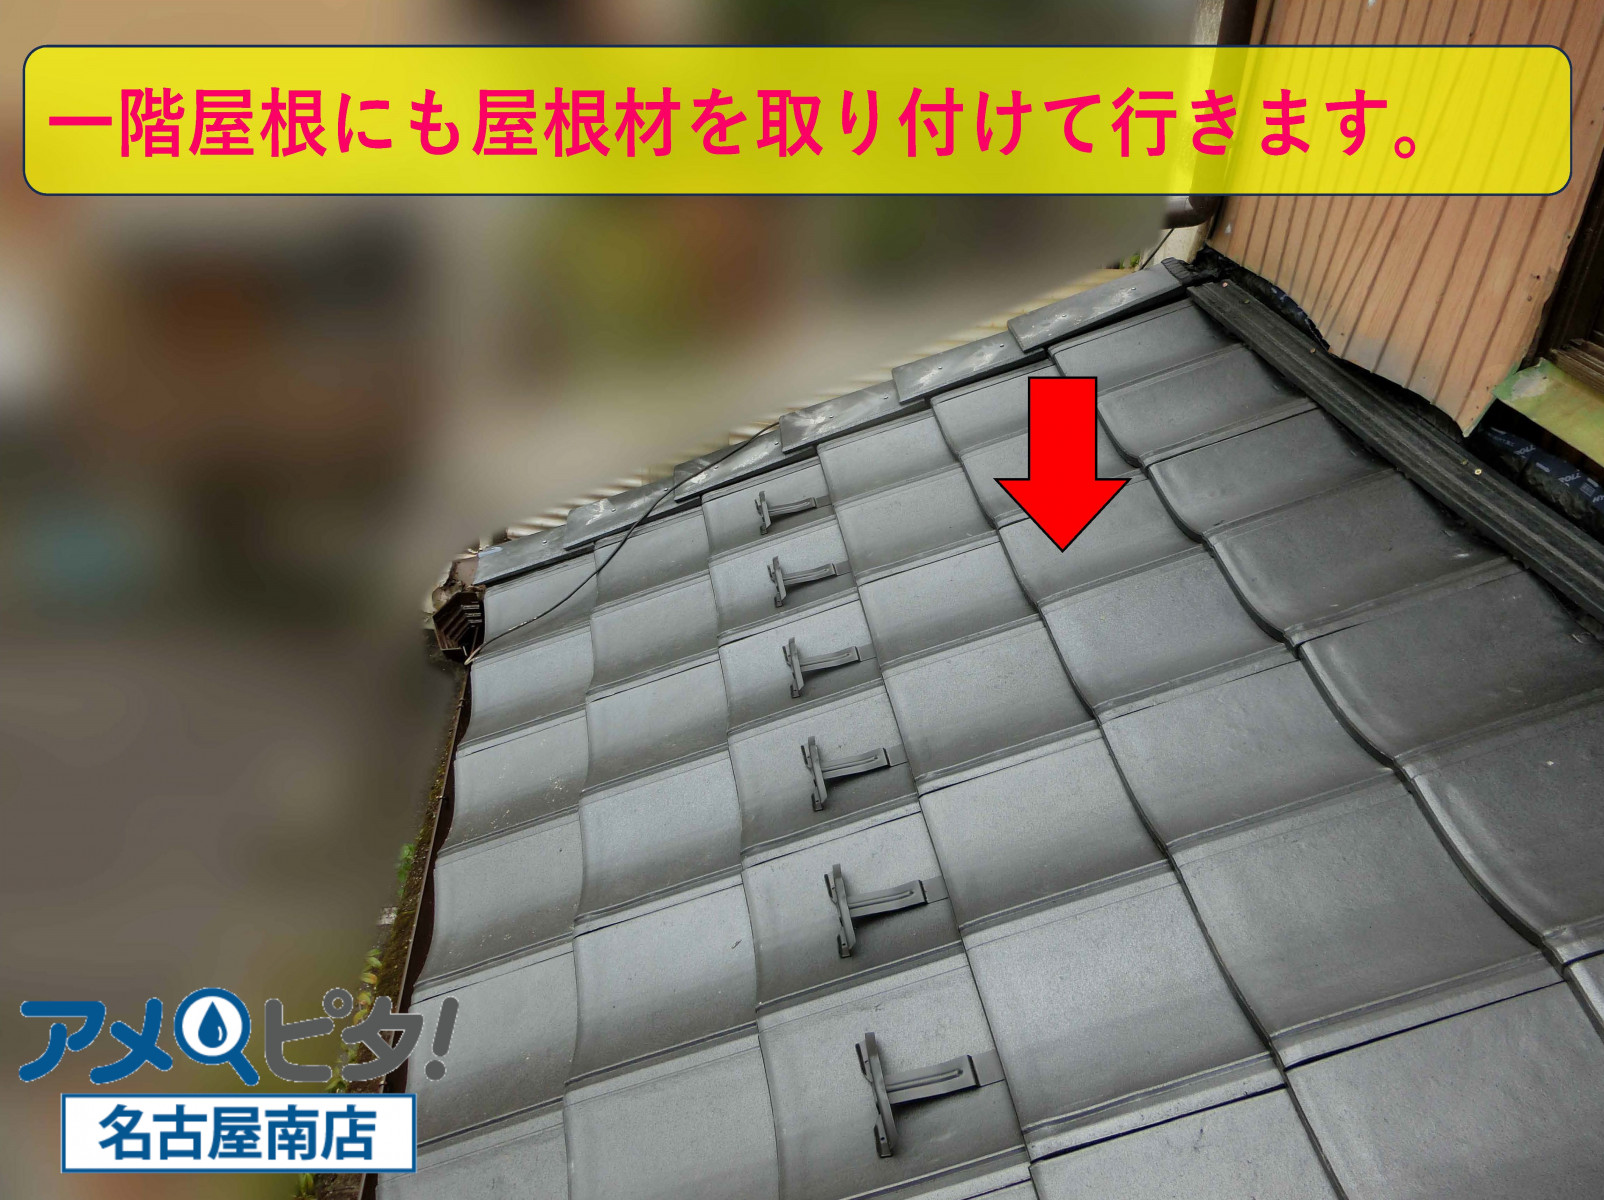 一階屋根にも同様に新しい屋根材で取り付けて行きます